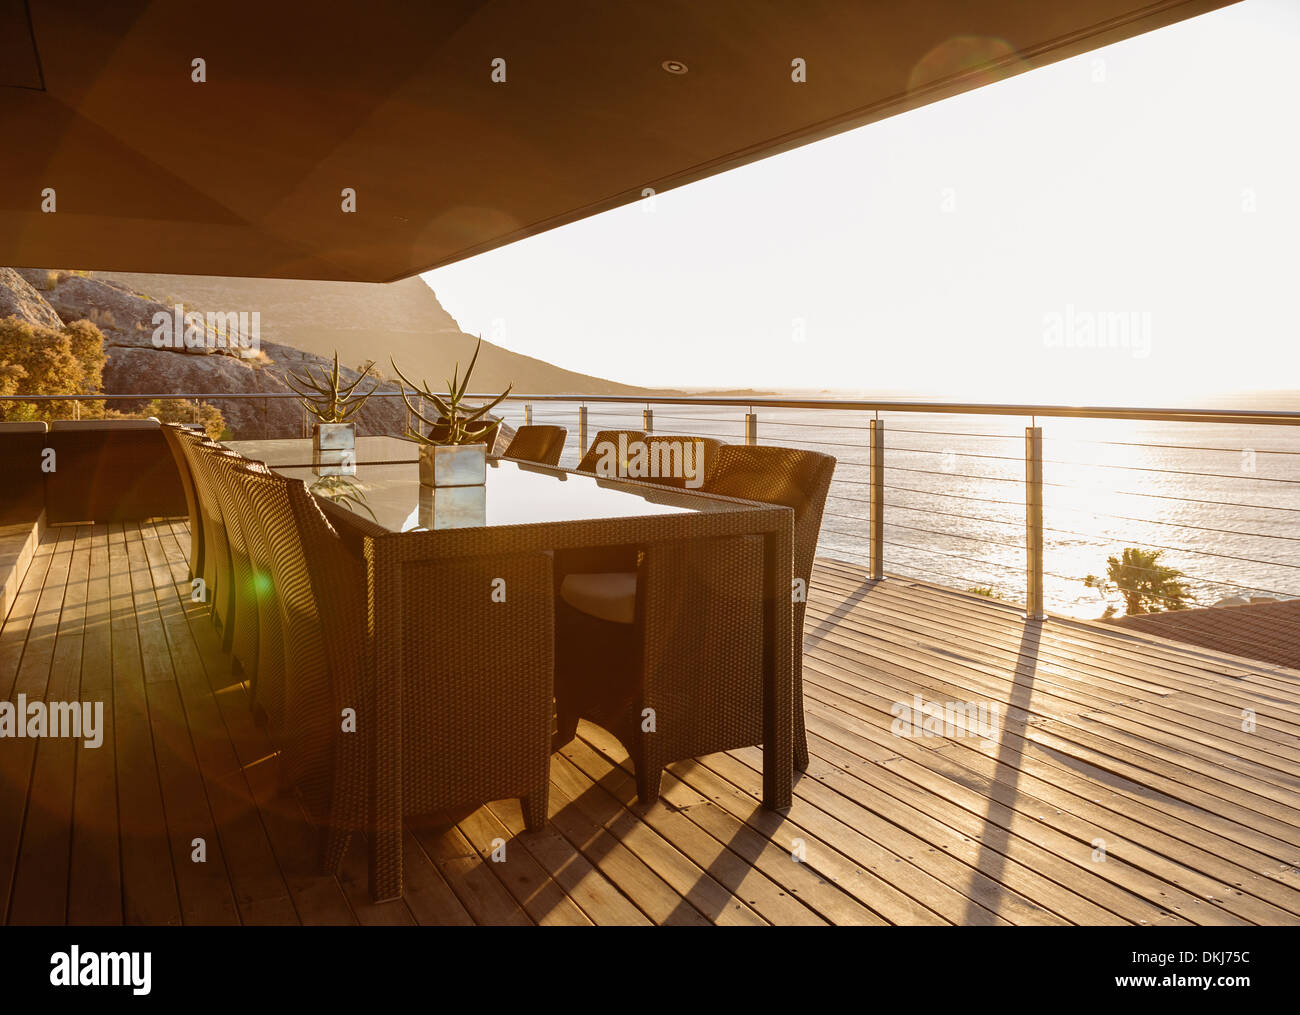 Dining table on luxury patio overlooking ocean Stock Photo